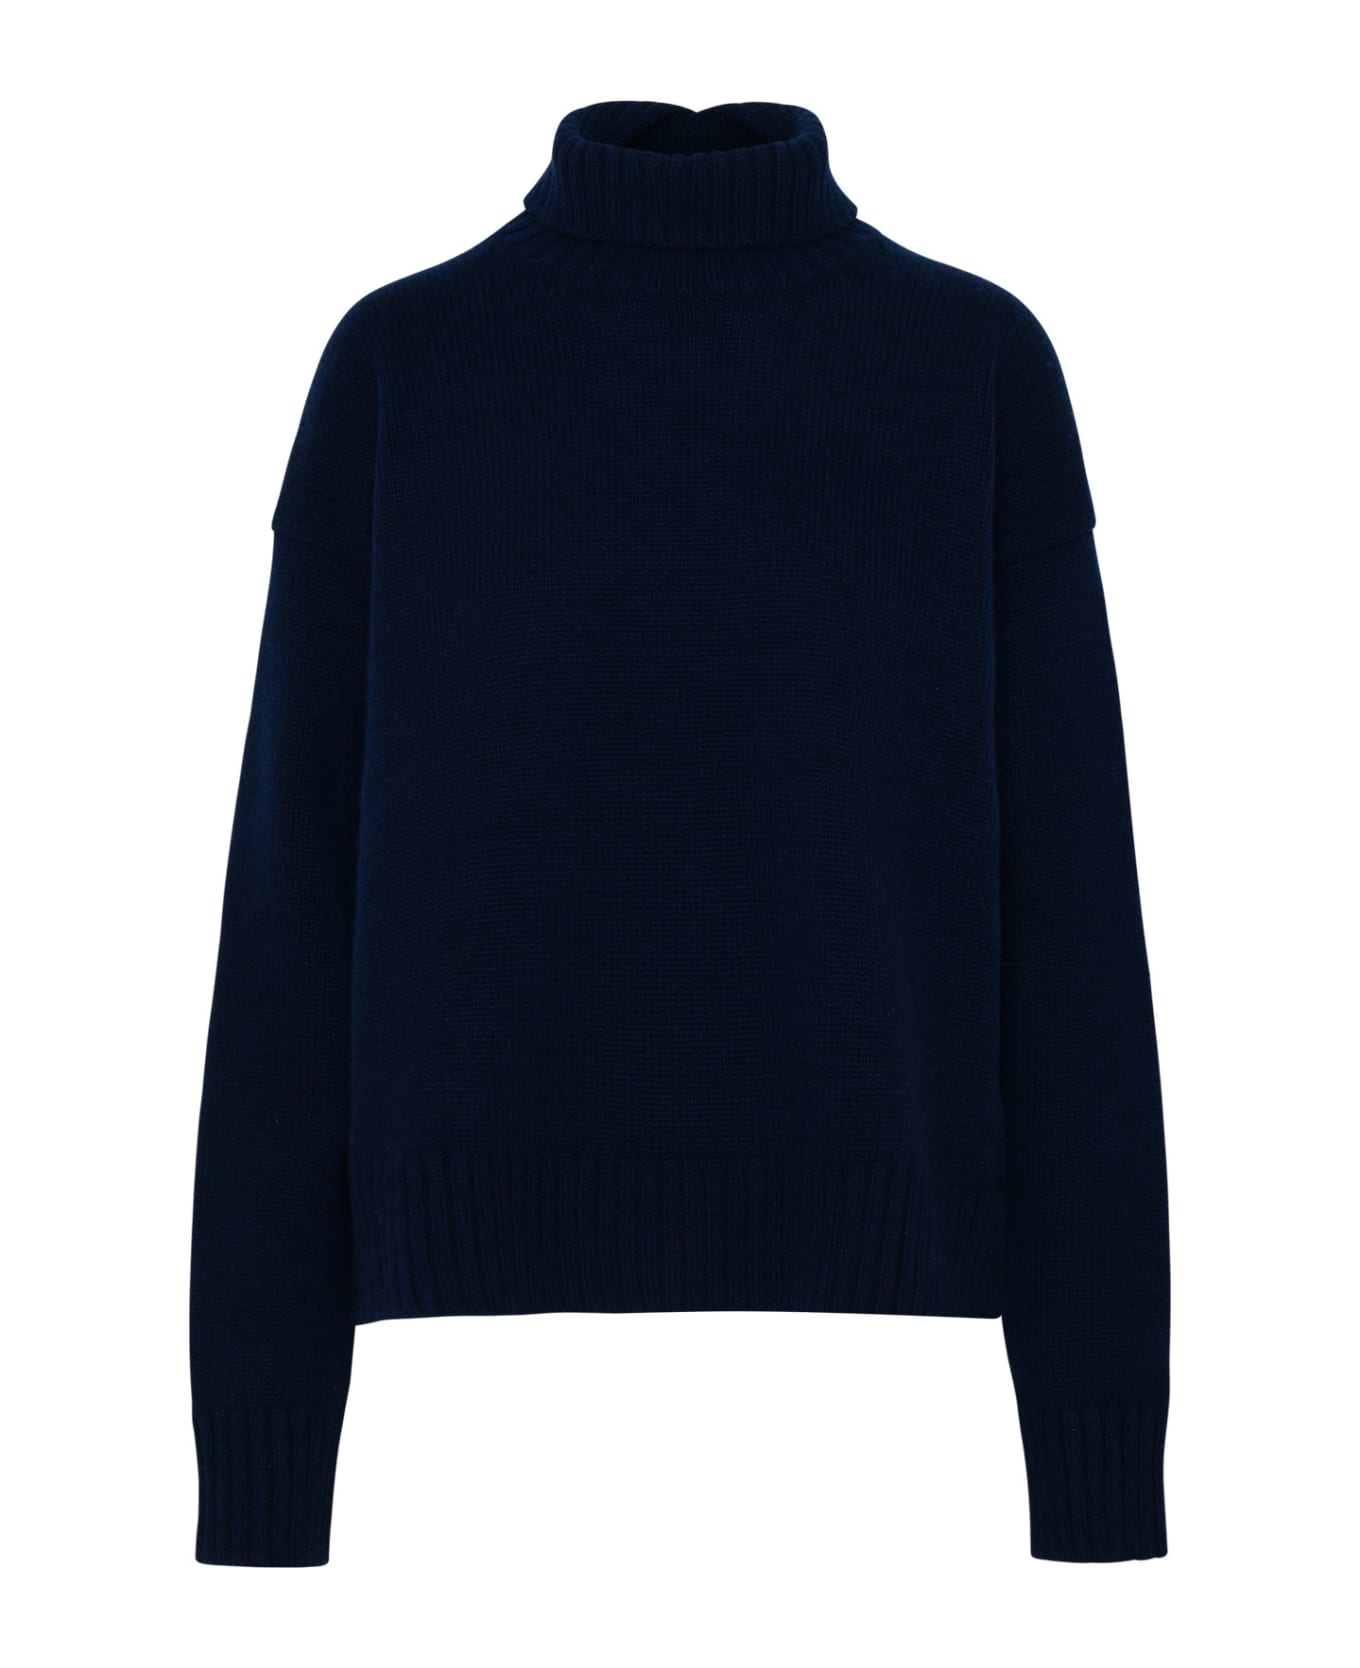 Jil Sander Sweater In Navy Cashmere Blend - Blue ニットウェア